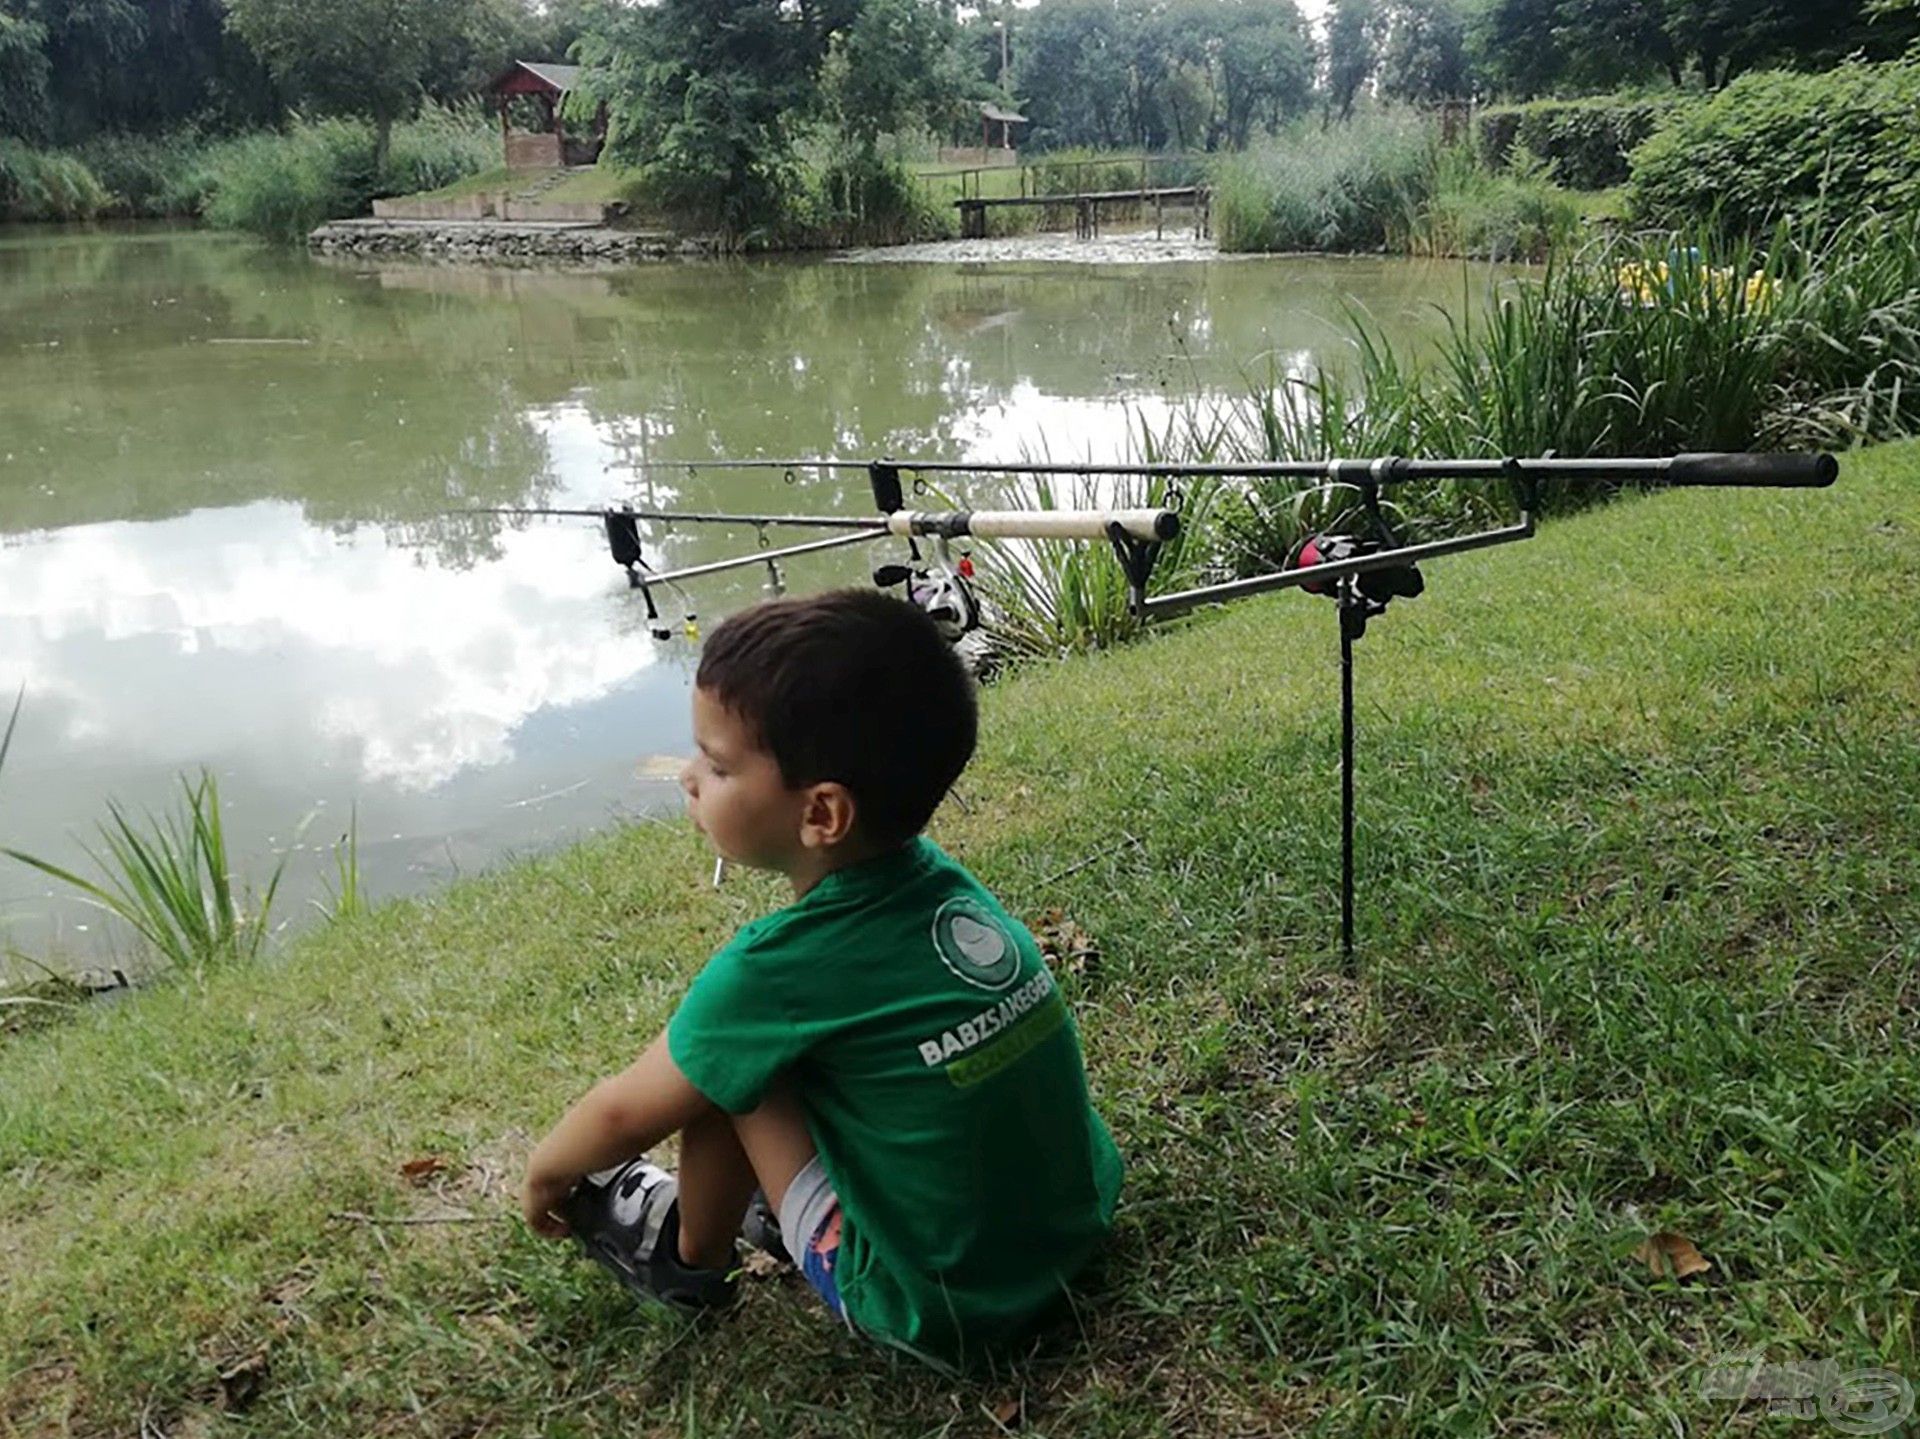 Mezőhegyesi horgászat kisfiam társaságában